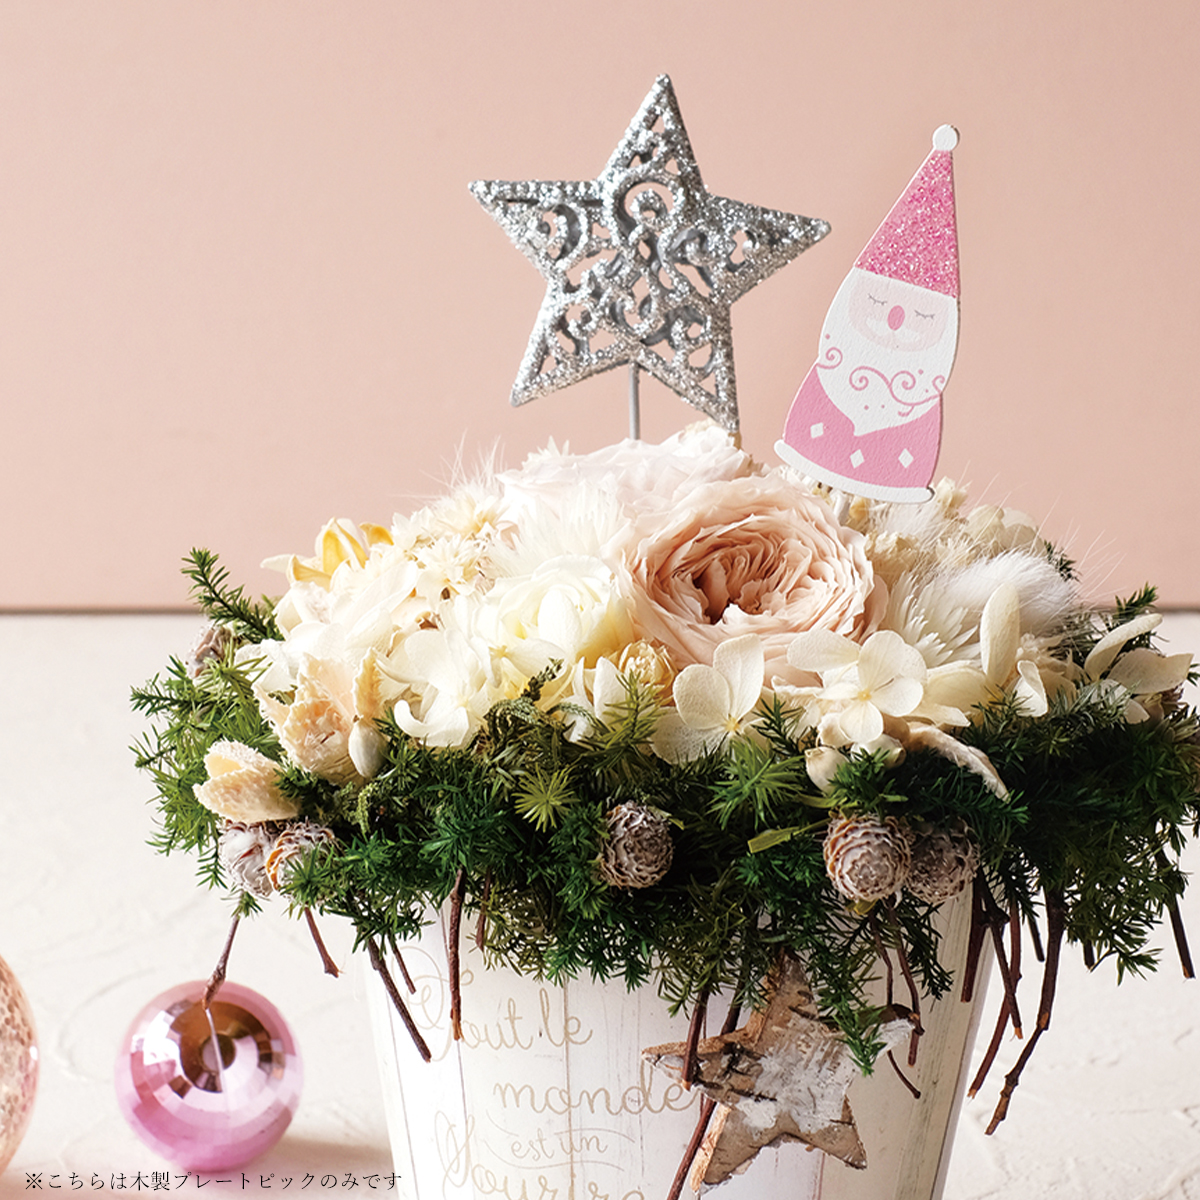 【楽しいクリスマスを迎える☆】木製プレートピック ラグジュアリー パープル×ピンク